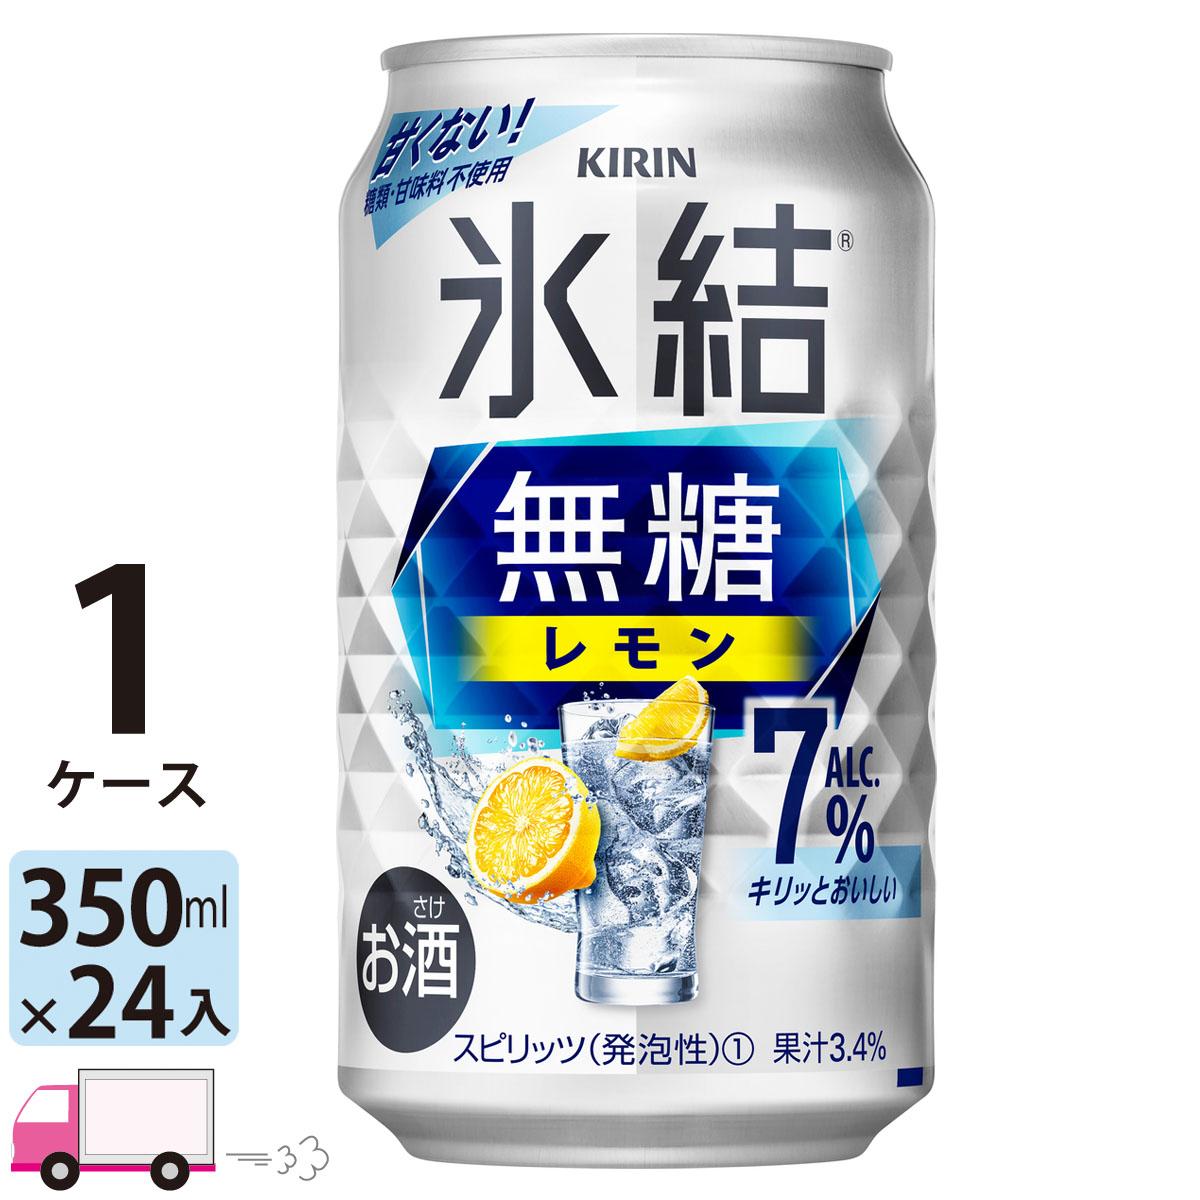 甘くない スッキリ爽やかな度数7％の無糖レモンチューハイ 送料無料 キリン 氷結無糖 レモン 格安 価格でご提供いたします 7% 24本入り 豊富な品 350ml缶×1ケース